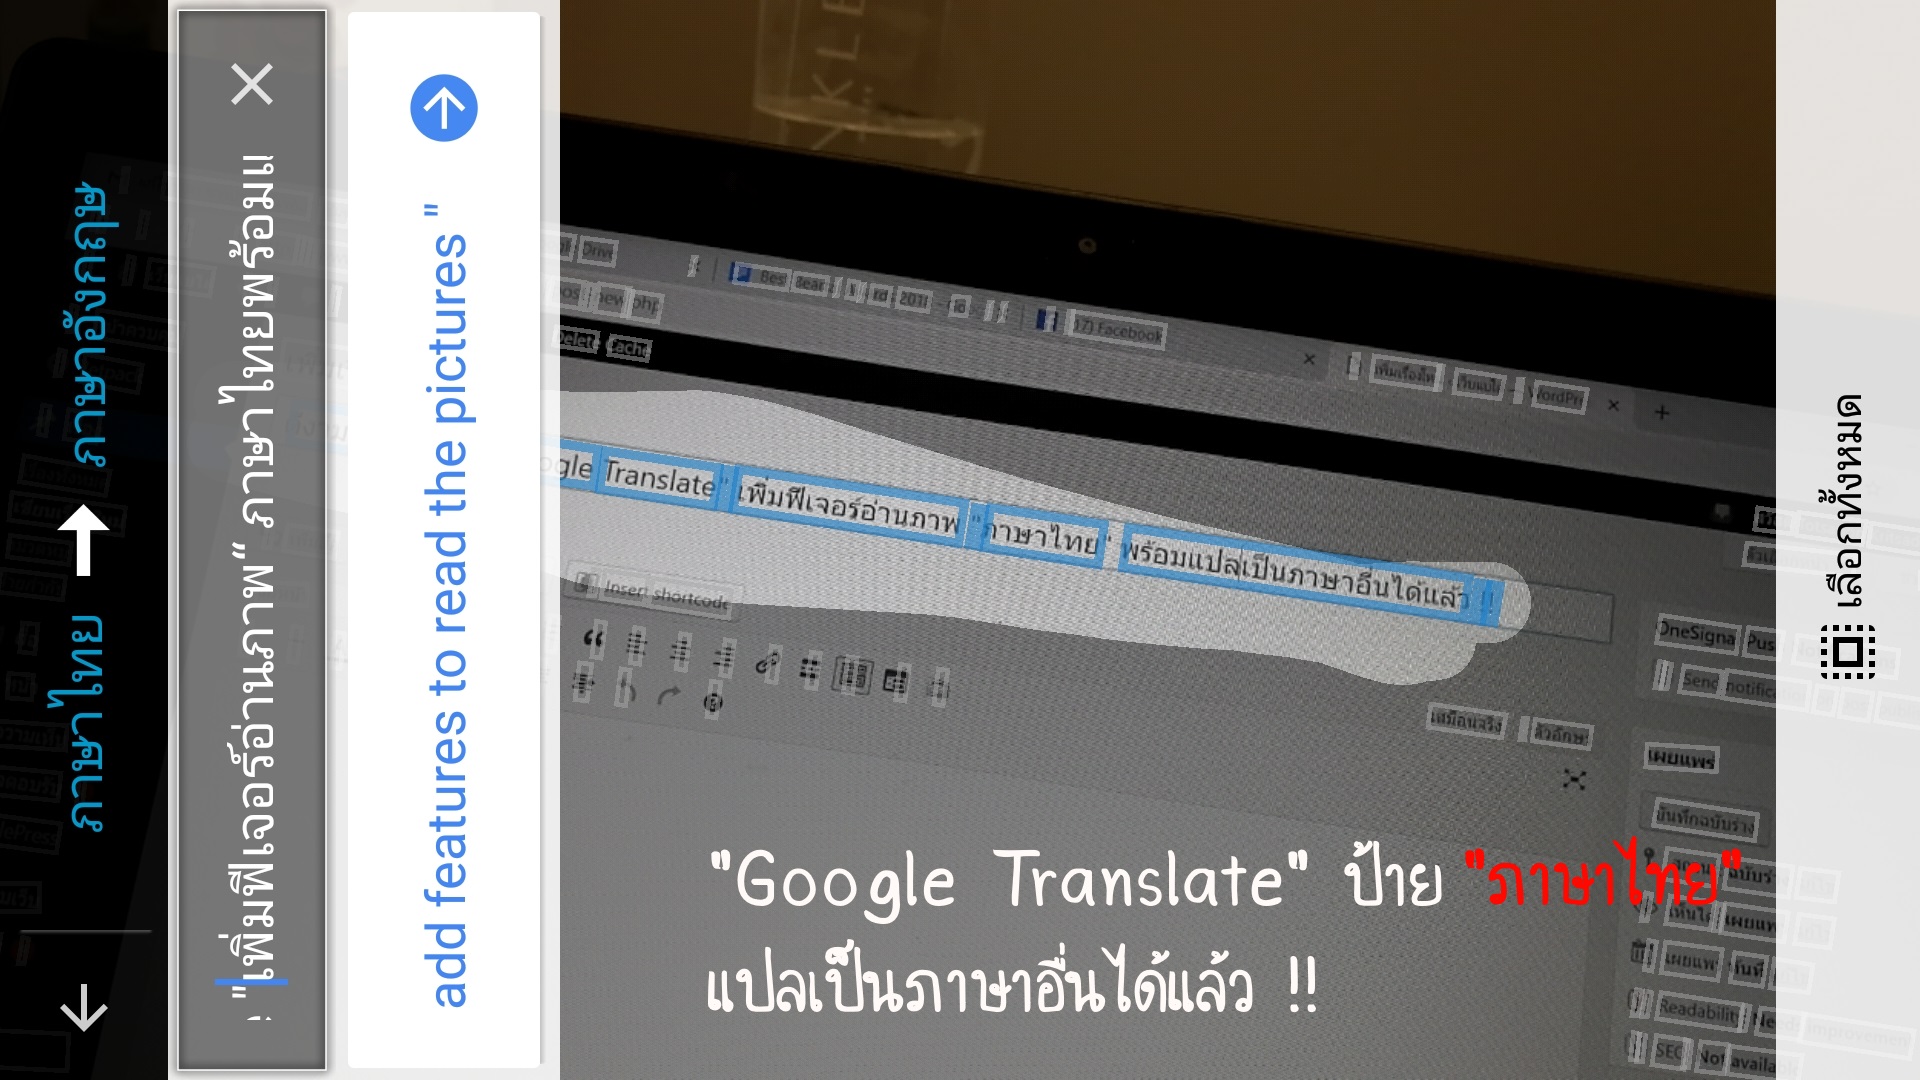 ดีงามพระราม 8!! “Google Translate” เพิ่มฟีเจอร์อ่านภาพ “ภาษาไทย” พร้อมแปลเป็นภาษาอื่นได้แล้ว !!